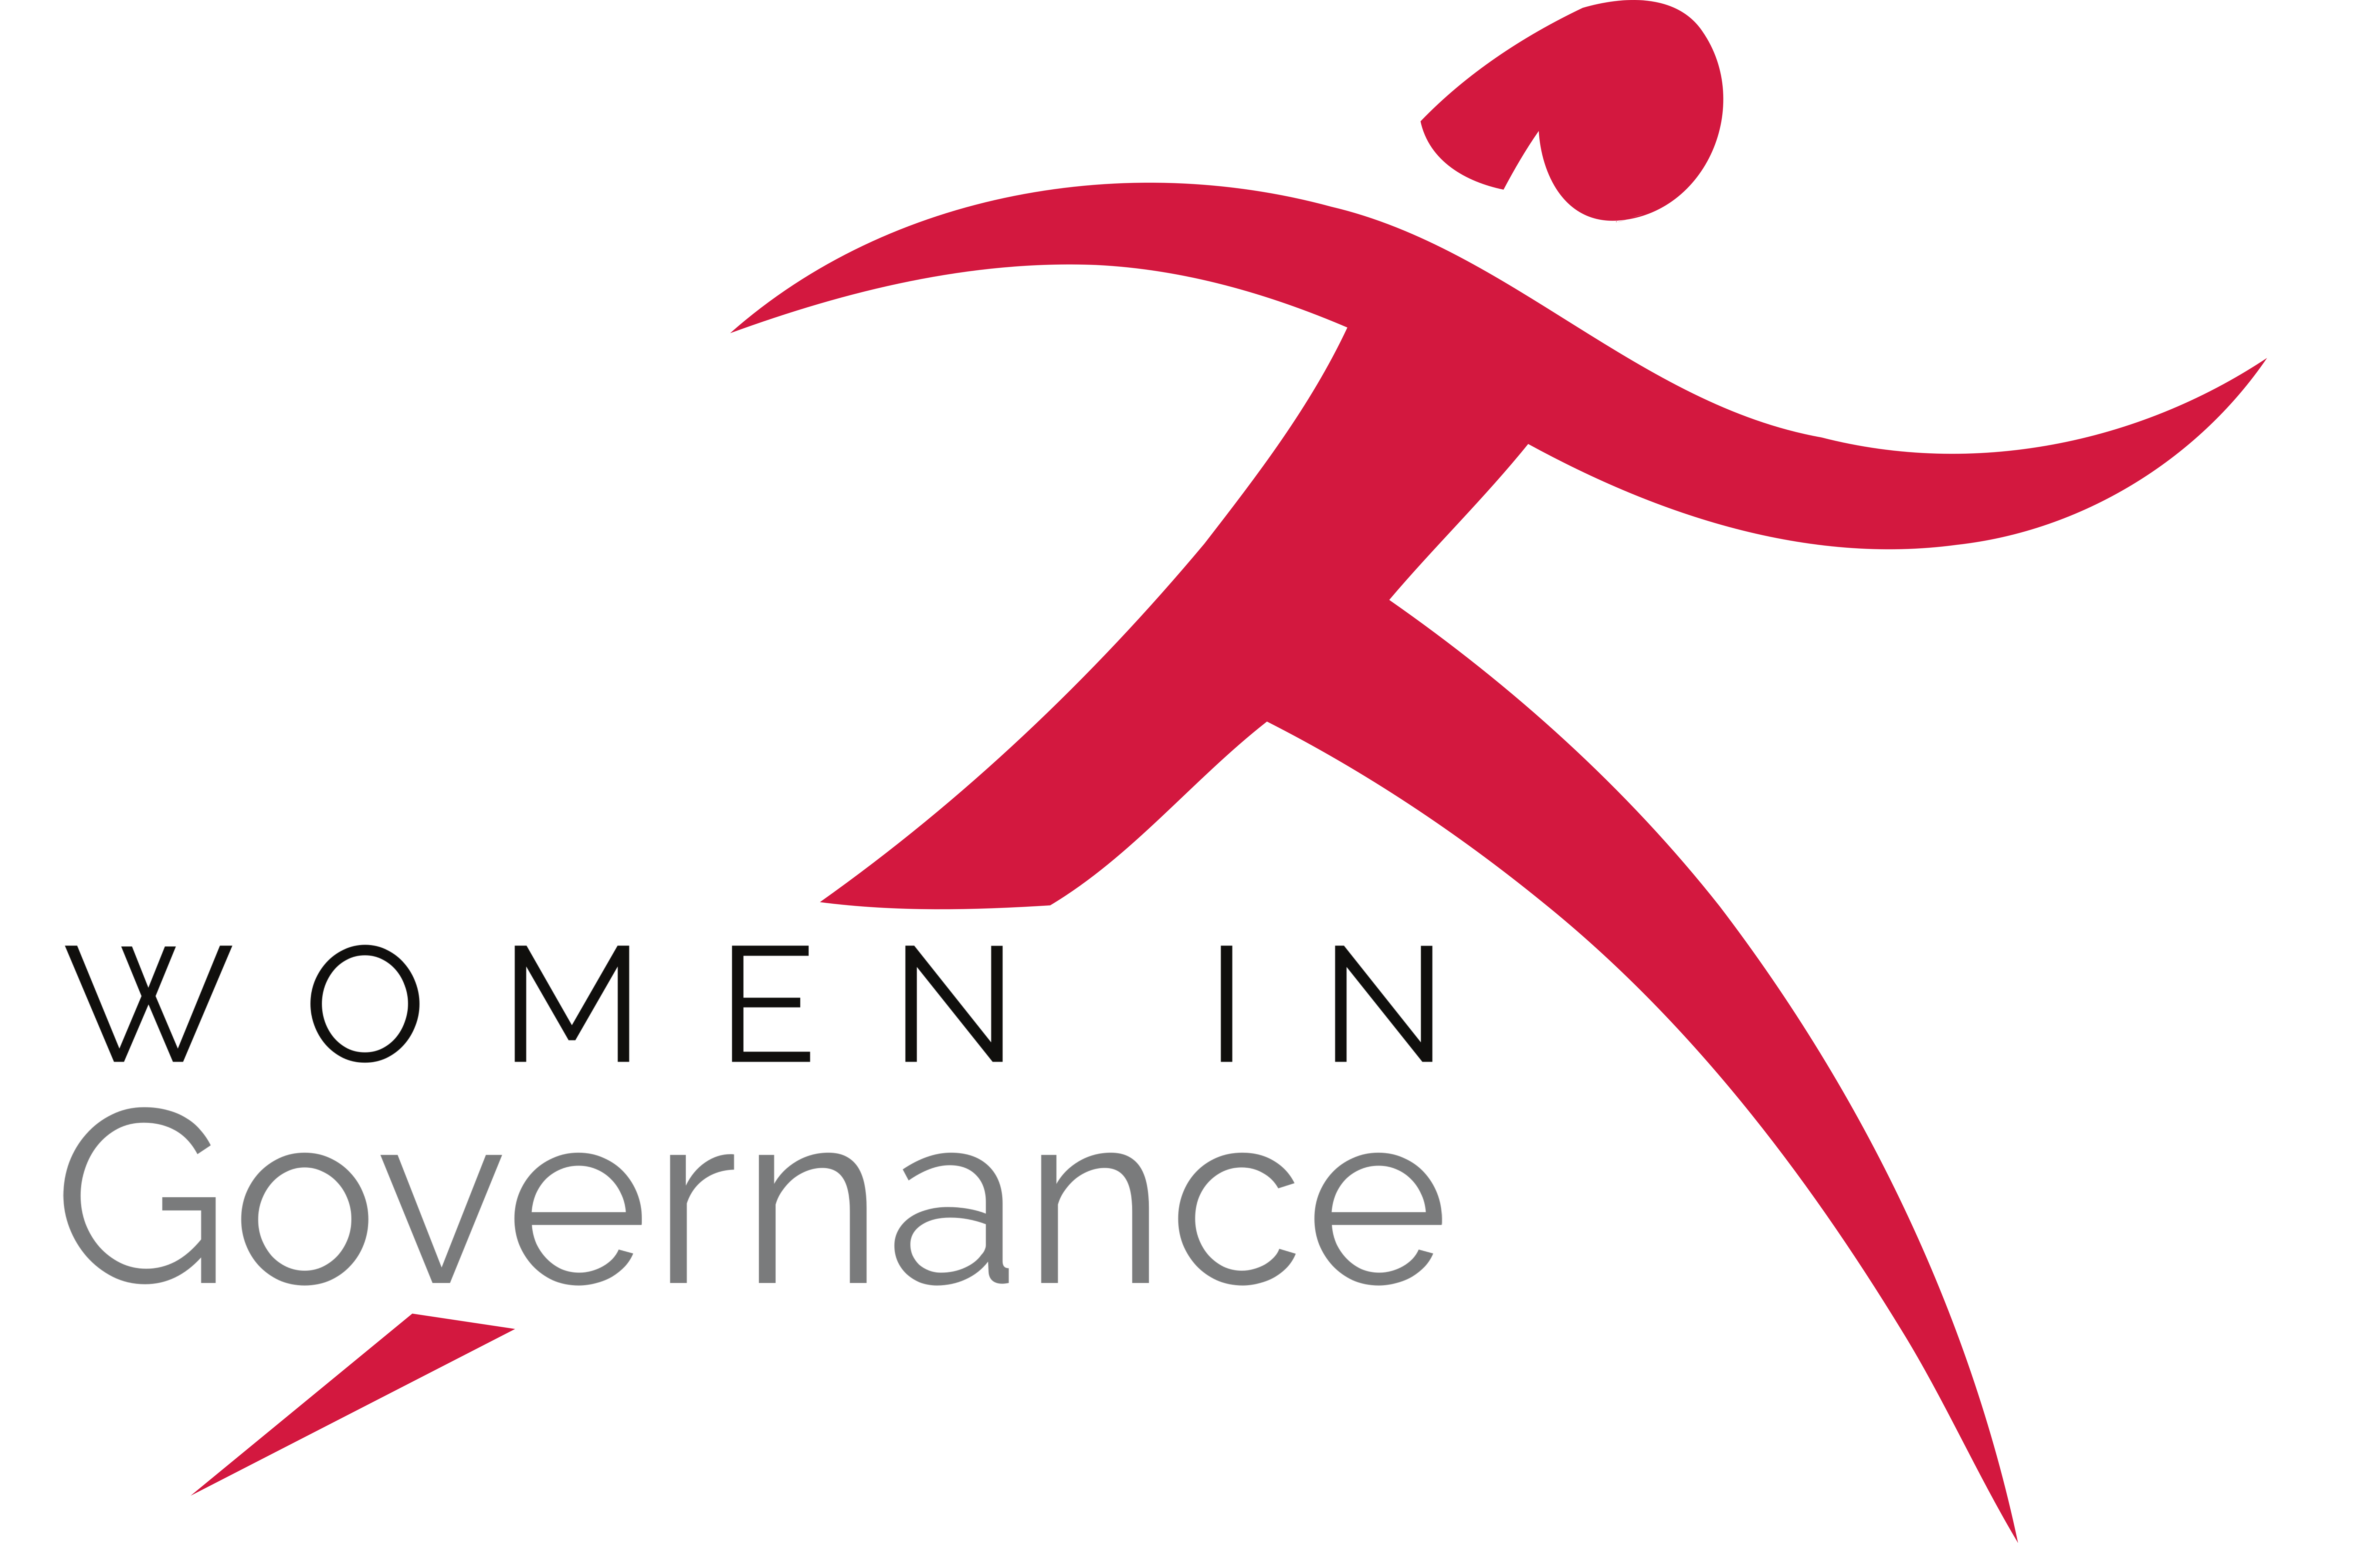 Women in Governance